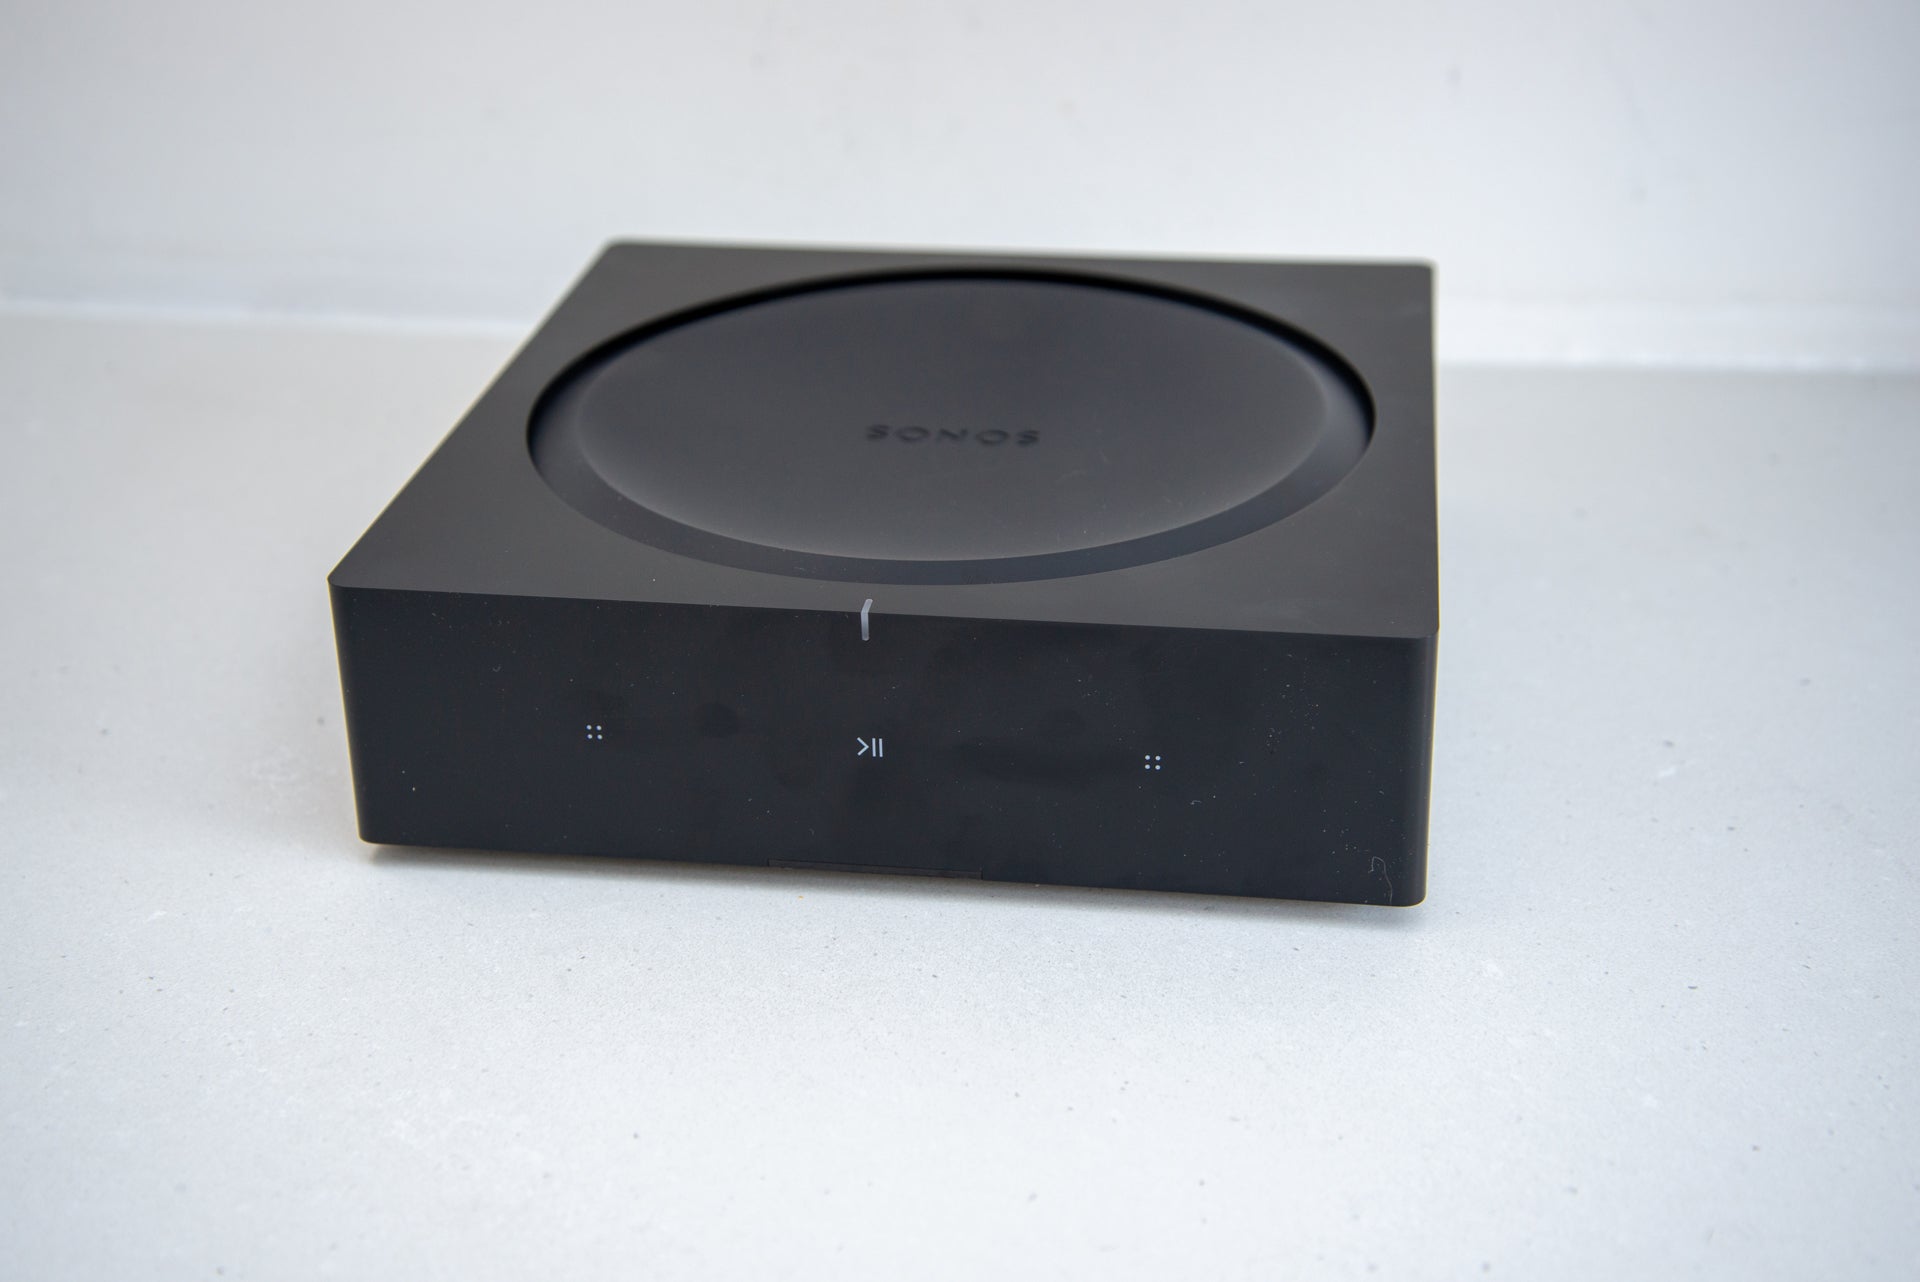 Amp - The best-sounding Sonos speaker